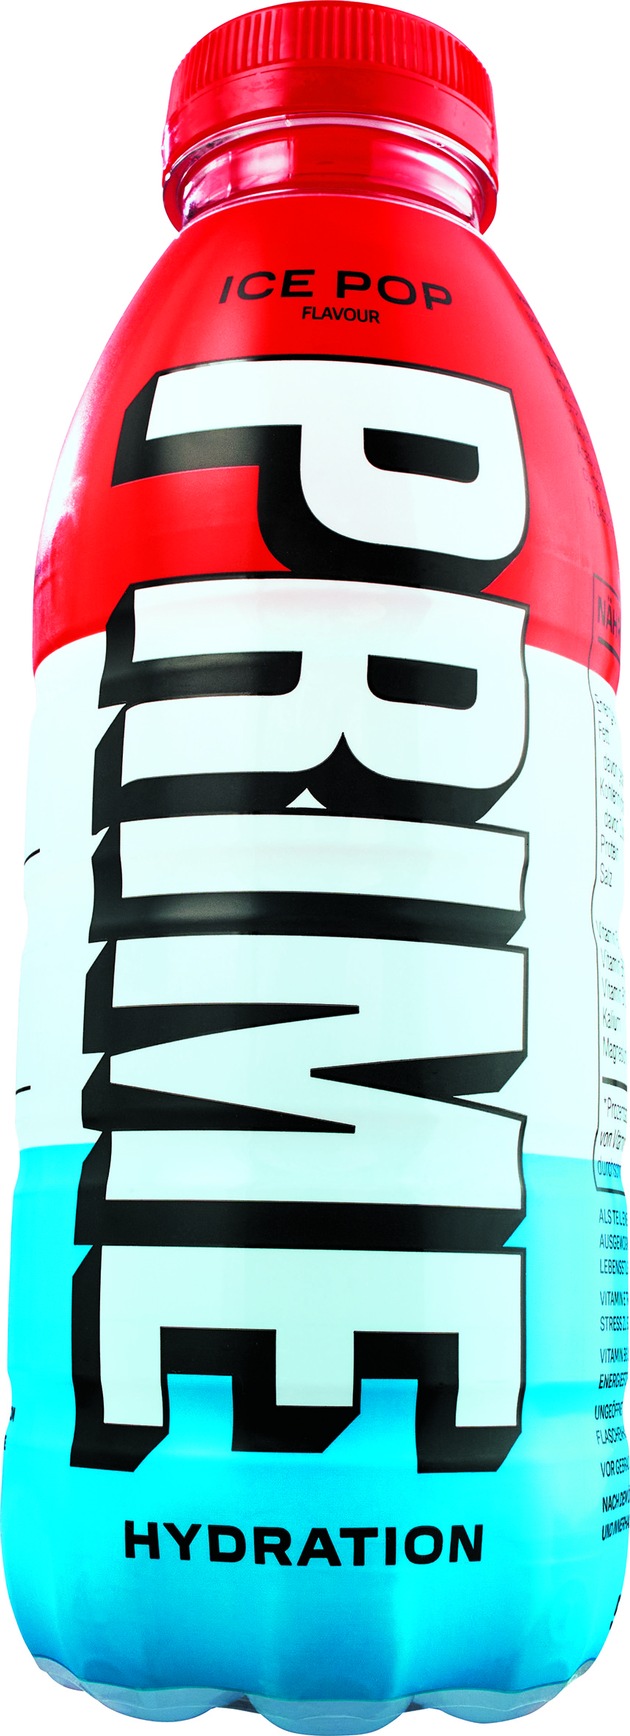 Netto Marken-Discount verkauft in KW 52 den Influencer Drink Prime Hydration